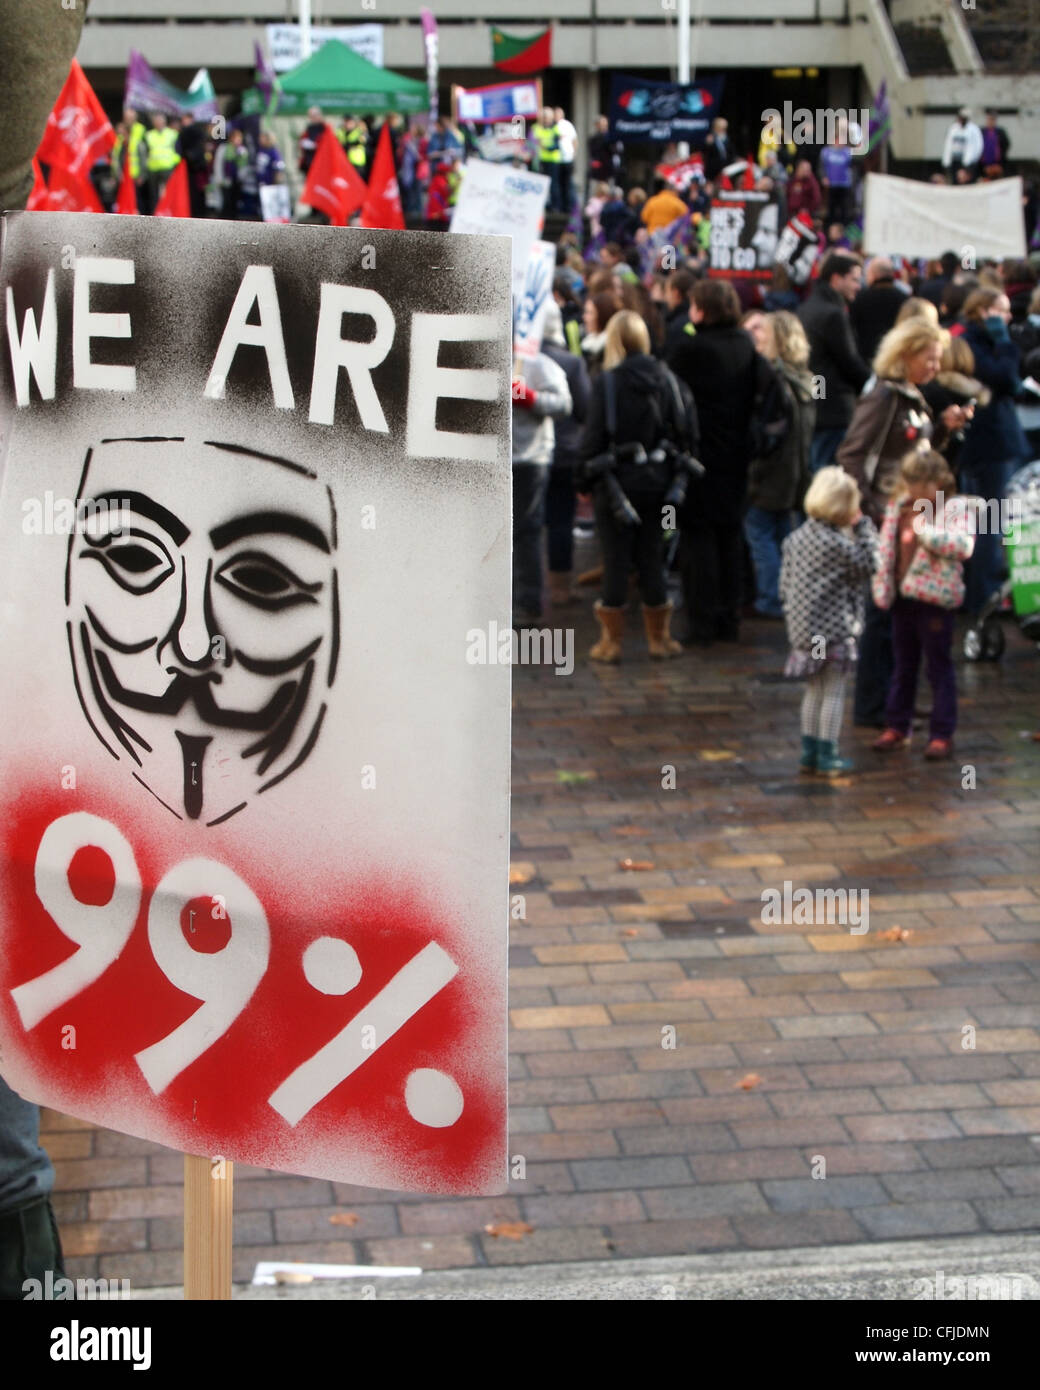 Wir sind 99 % Plakat mit dem Guy Fawkes Maske Symbol und Demonstranten im Hintergrund Stockfoto